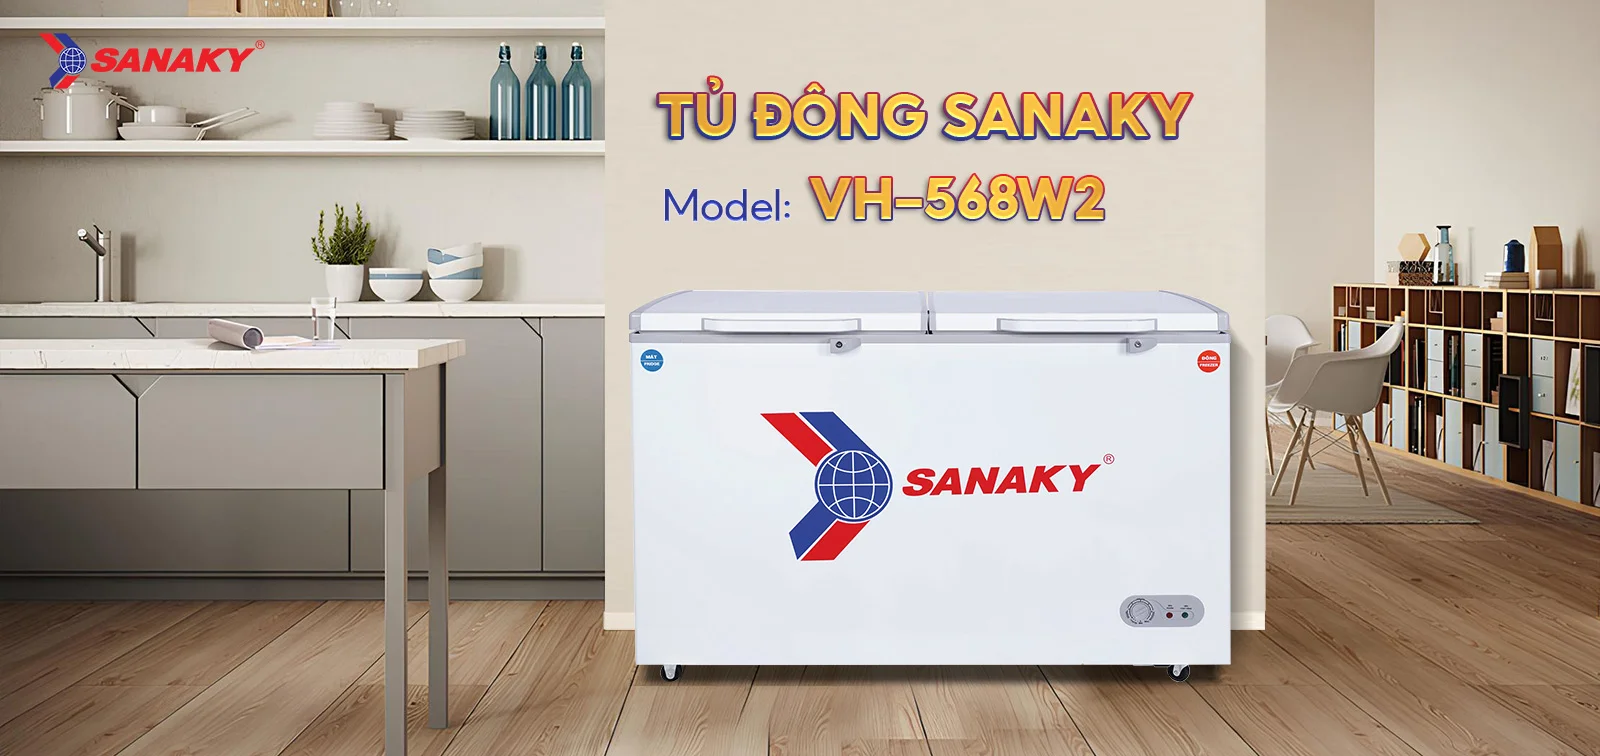 Tủ Đông Sanaky VH-568W2